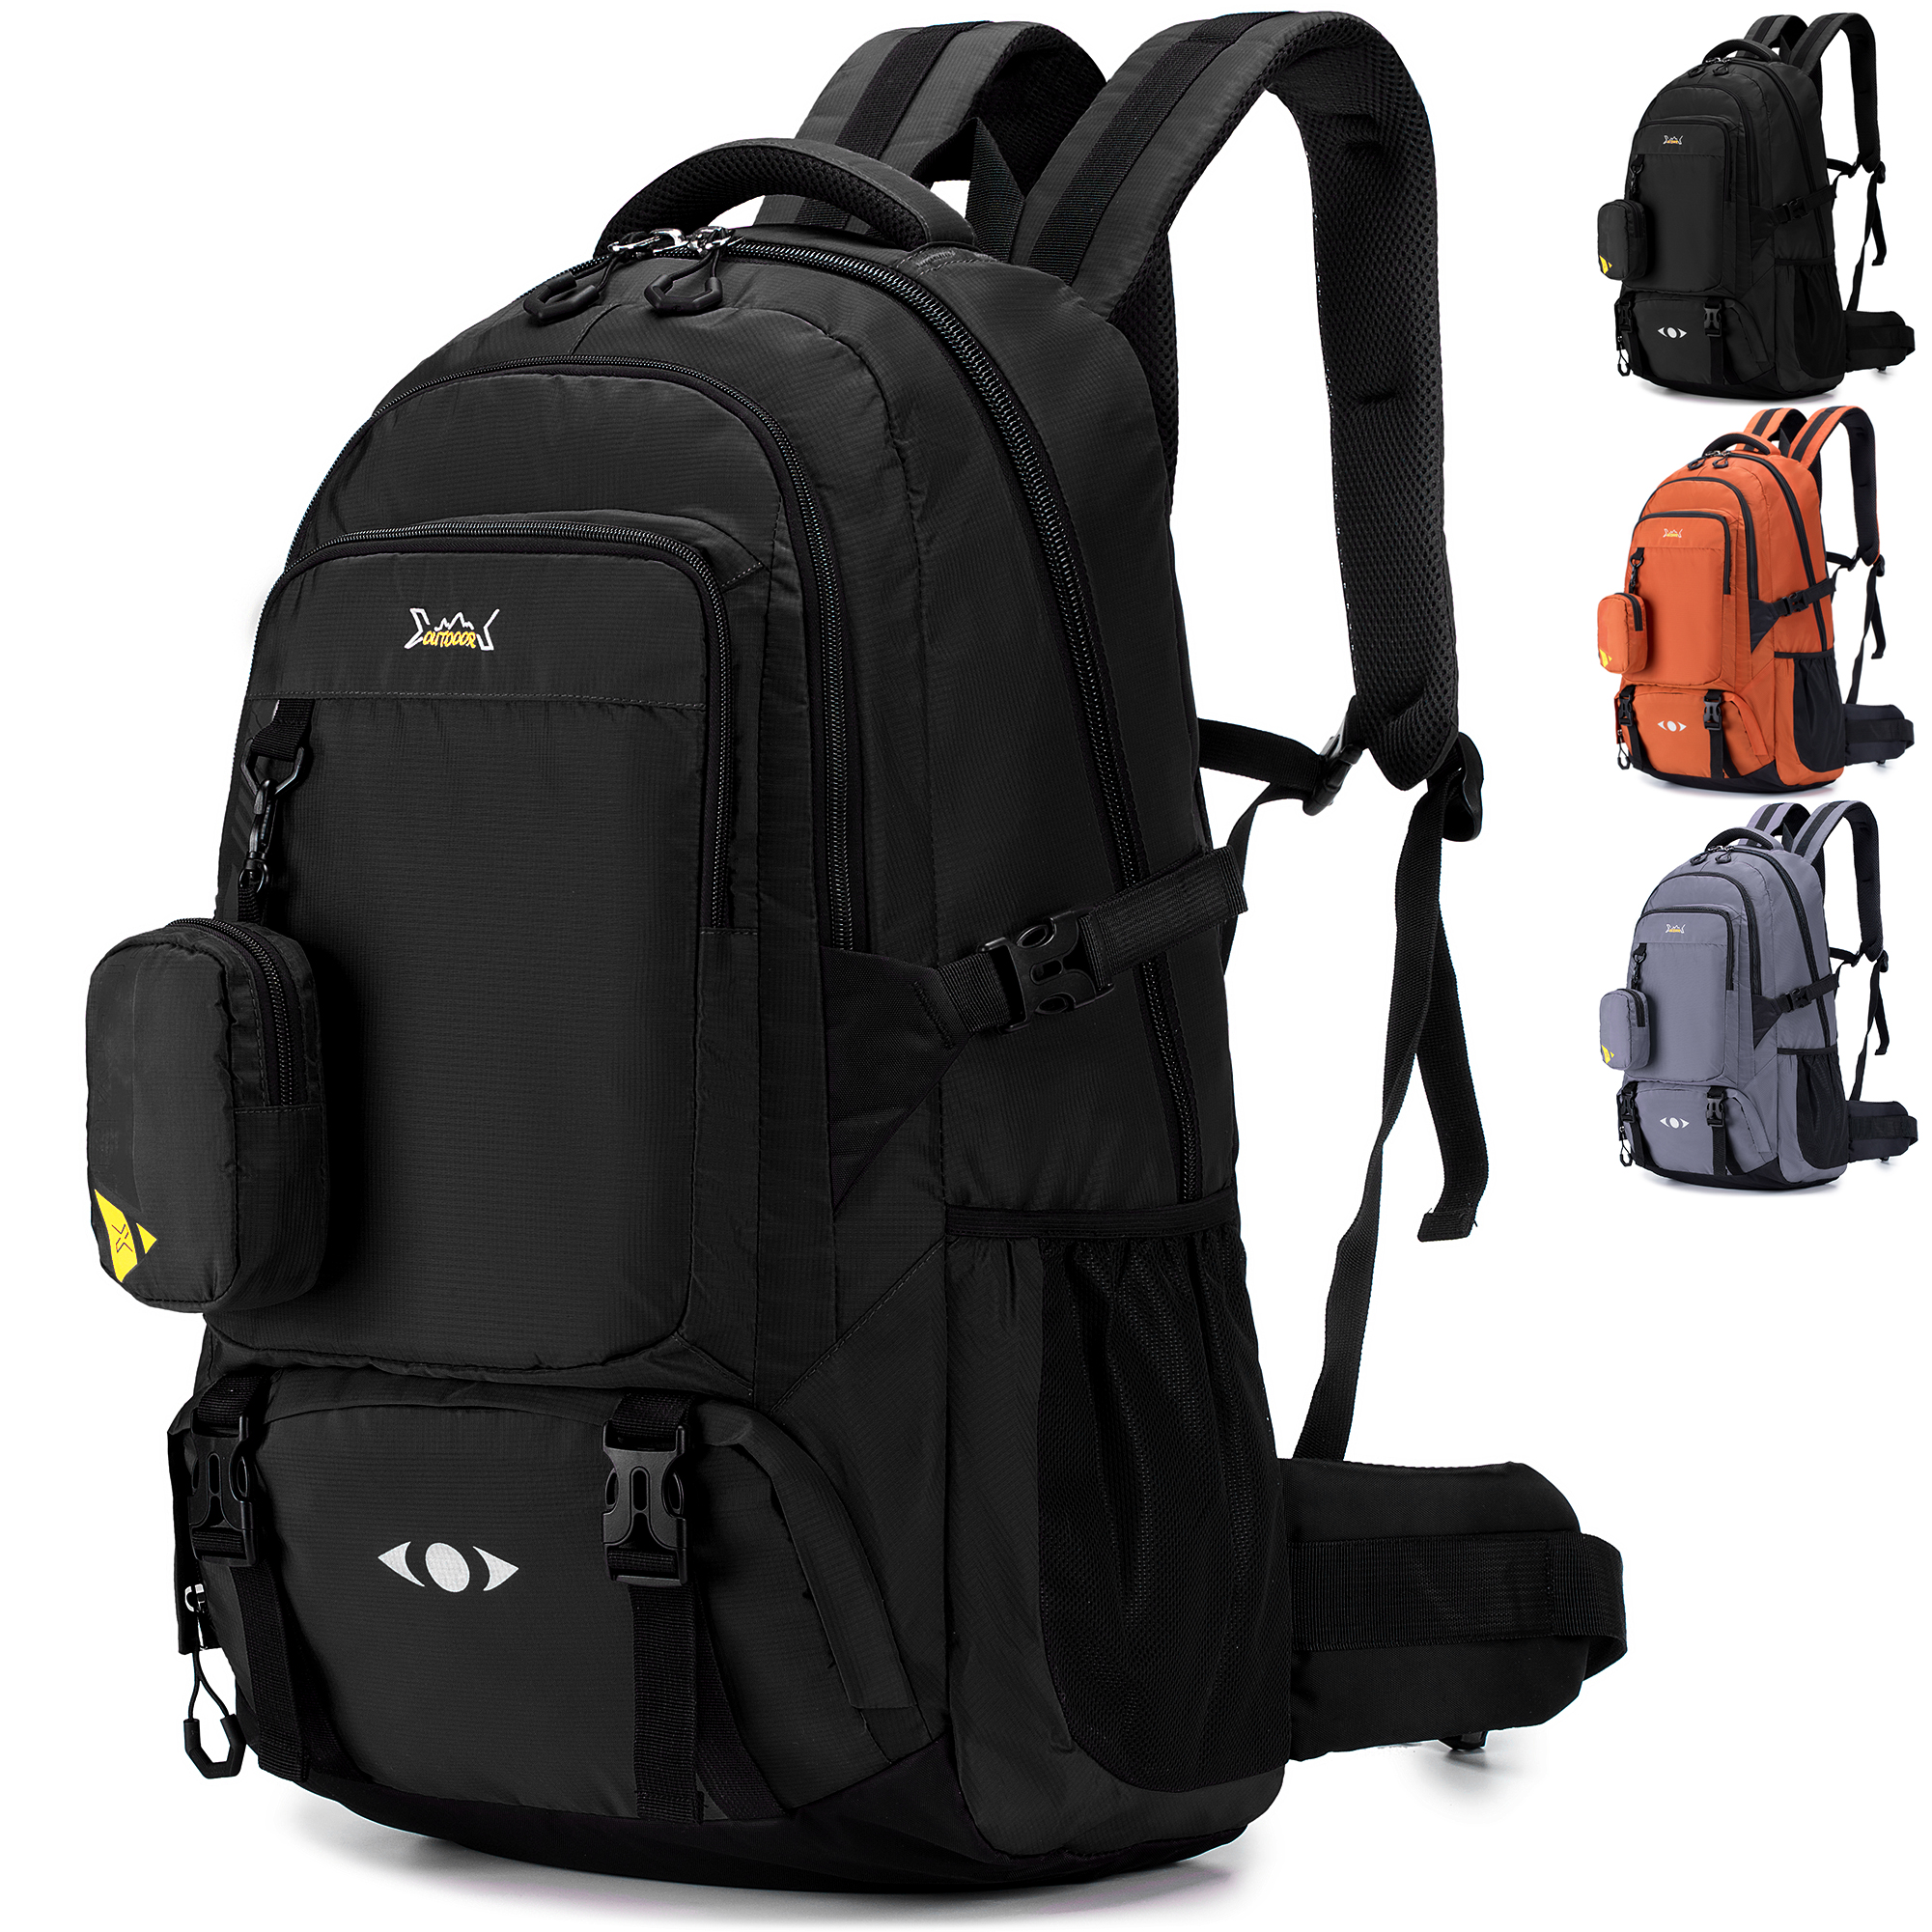 BAGZY Travel Backpack 70L Trekking Backpack Laptop Backpack 15.6 inch Large Cabin Bag Rucksack Cabin Hand Luggage Suitcase Daypack Travel Bag (Black) - image 1 of 6